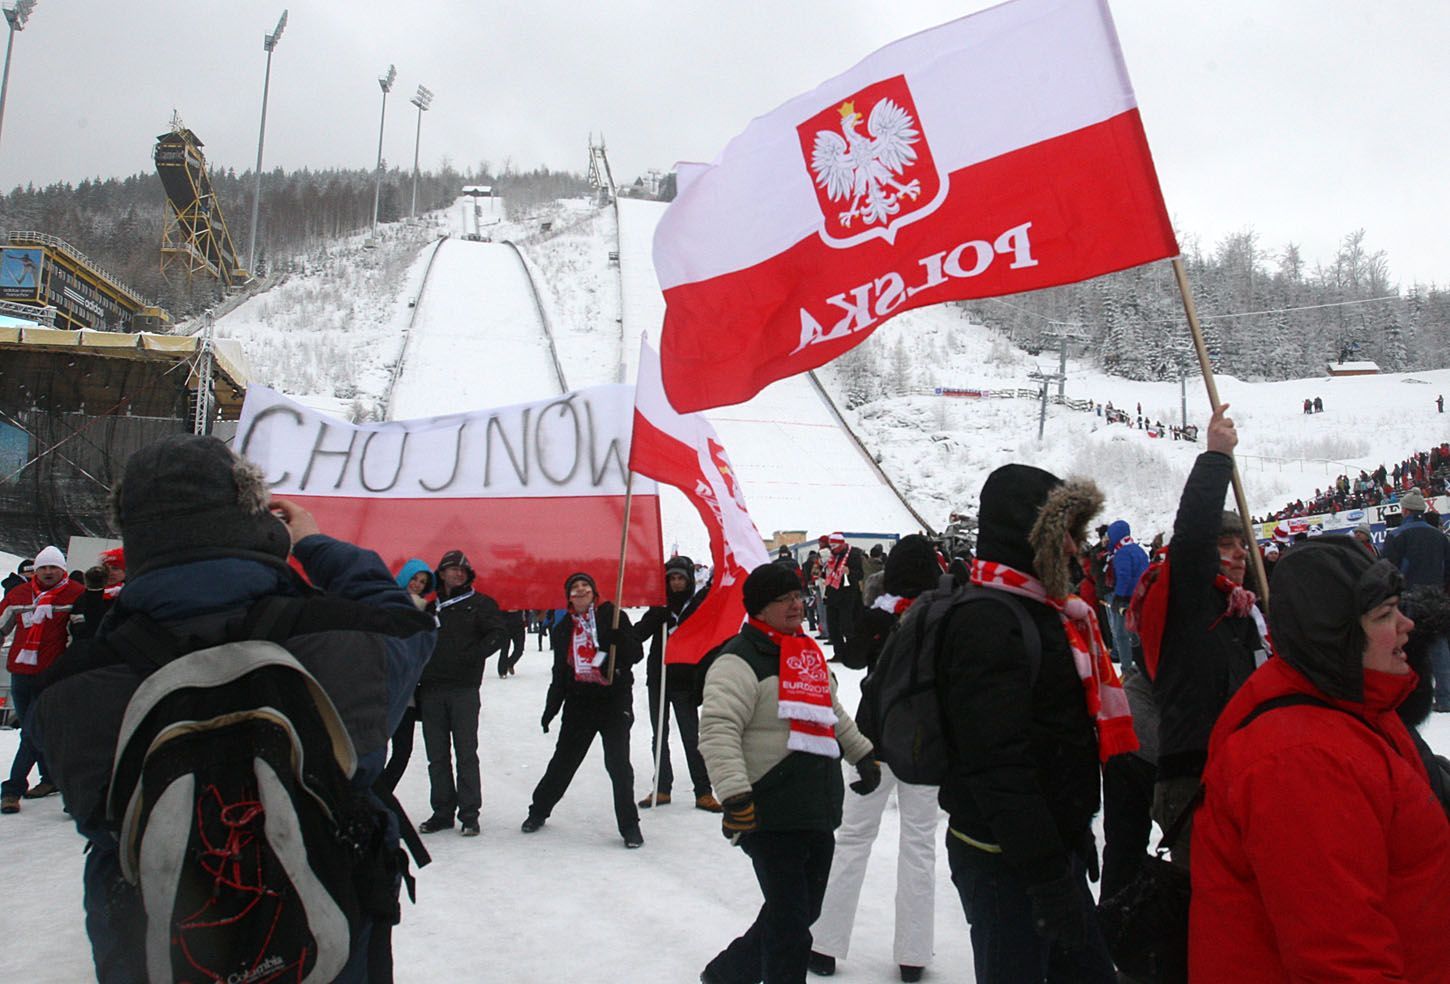 Lety na lyžích, Harrachov: fanoušci